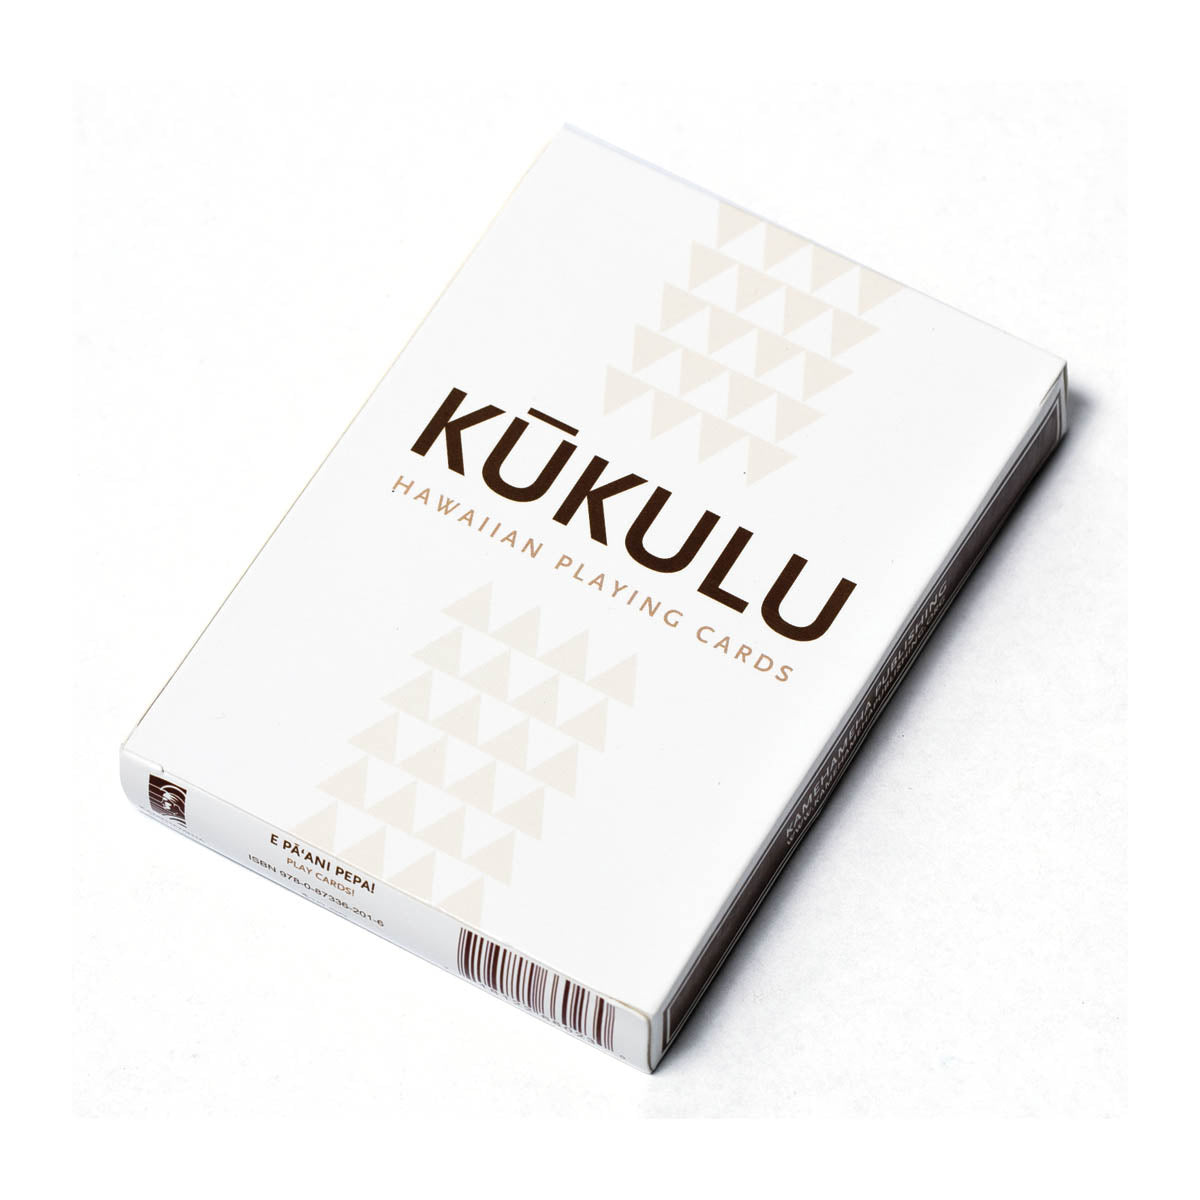 Kūkulu: Hawaiian Playing Cards